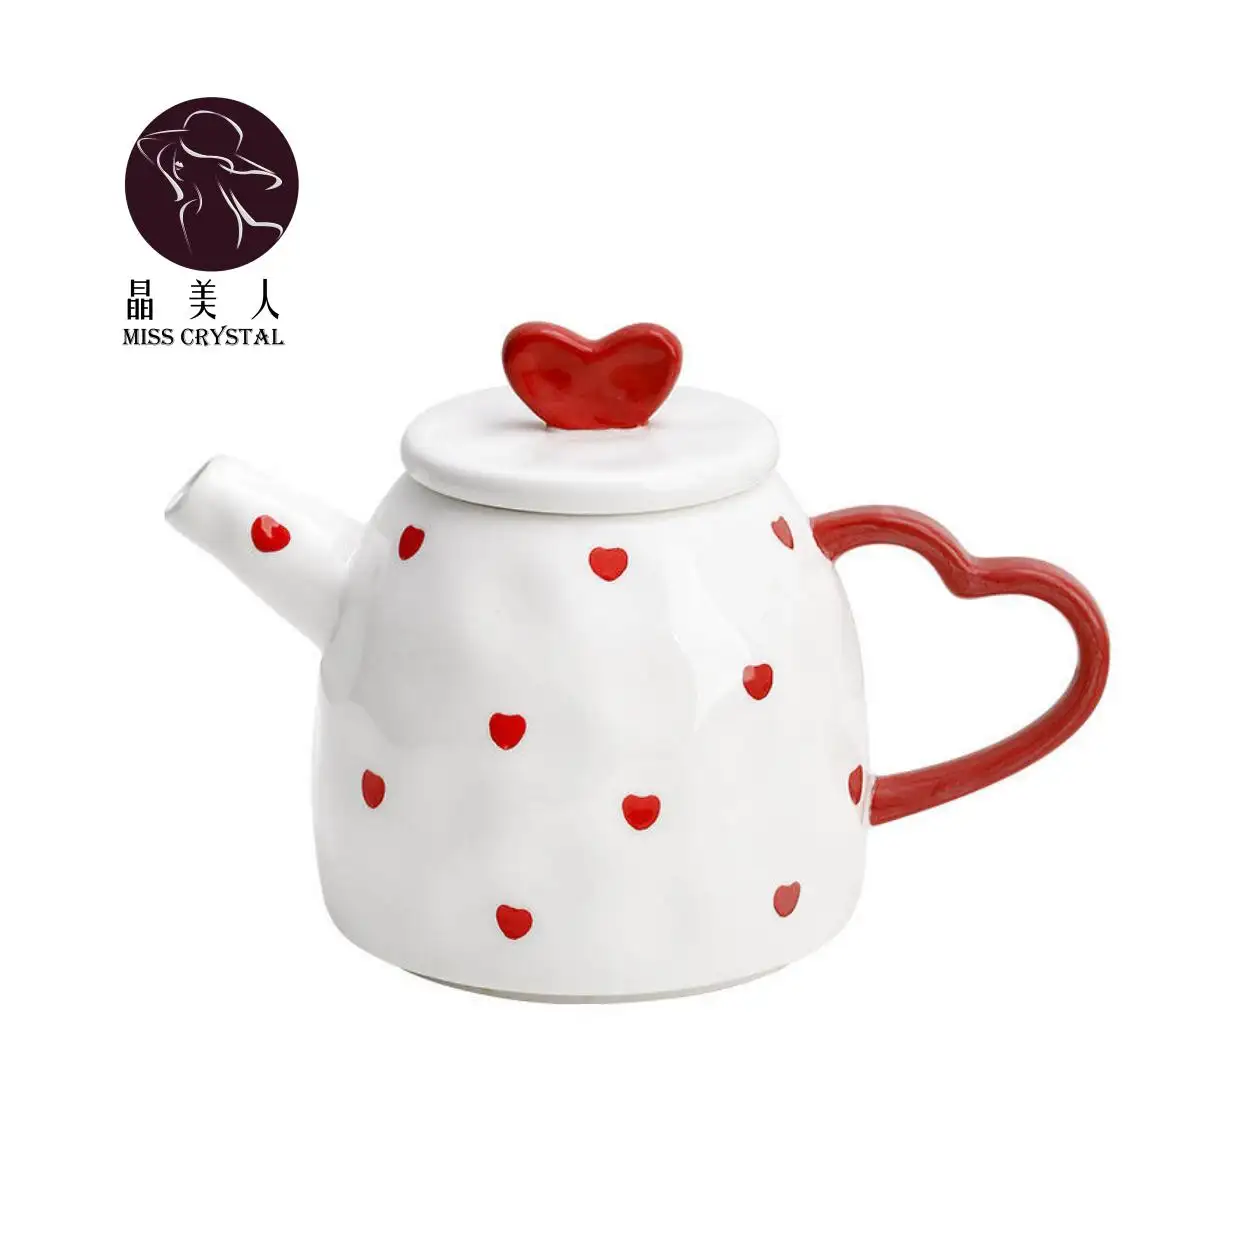 Moderno stile semplice a forma di cuore colore bianco singolo strato amore e tazza tazza in ceramica carina per la decorazione della tavola